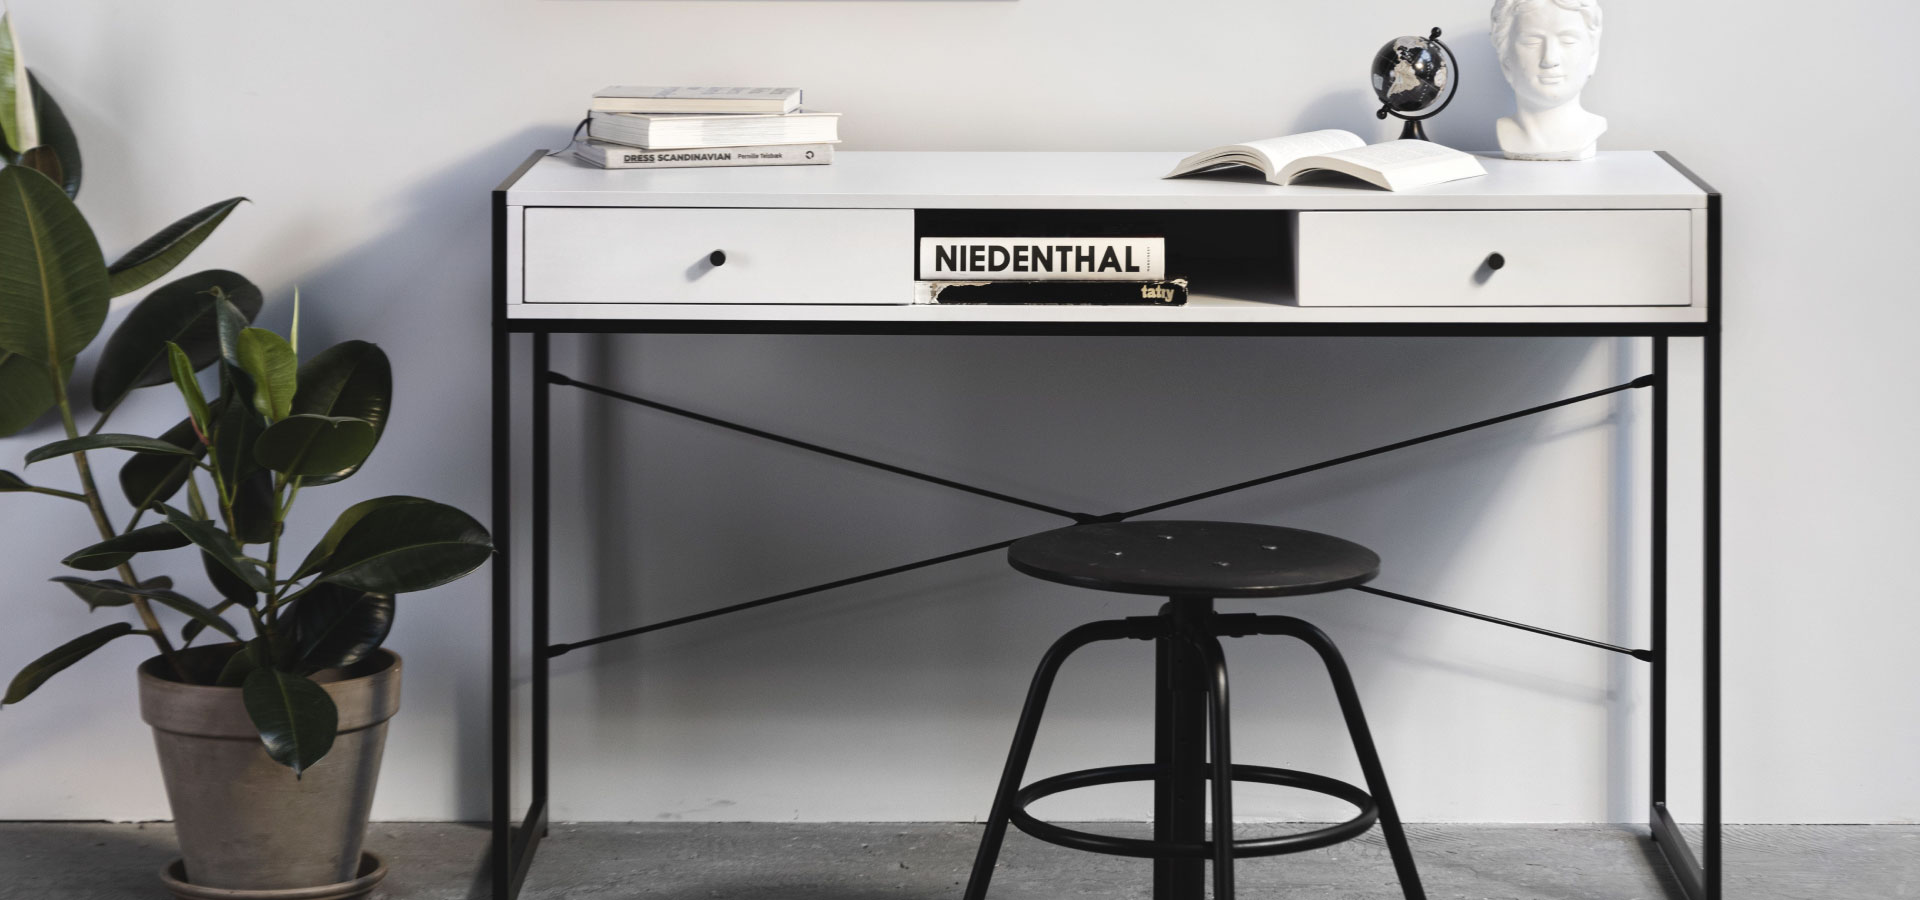 Białe biurko z dwoma szufladami stojące na metalowej konstrukcji. Obok biurka widoczna duża roślina w betonowej donicy. Przed biurkiem stoi niski, czarny stołek w stylu industrialnym.